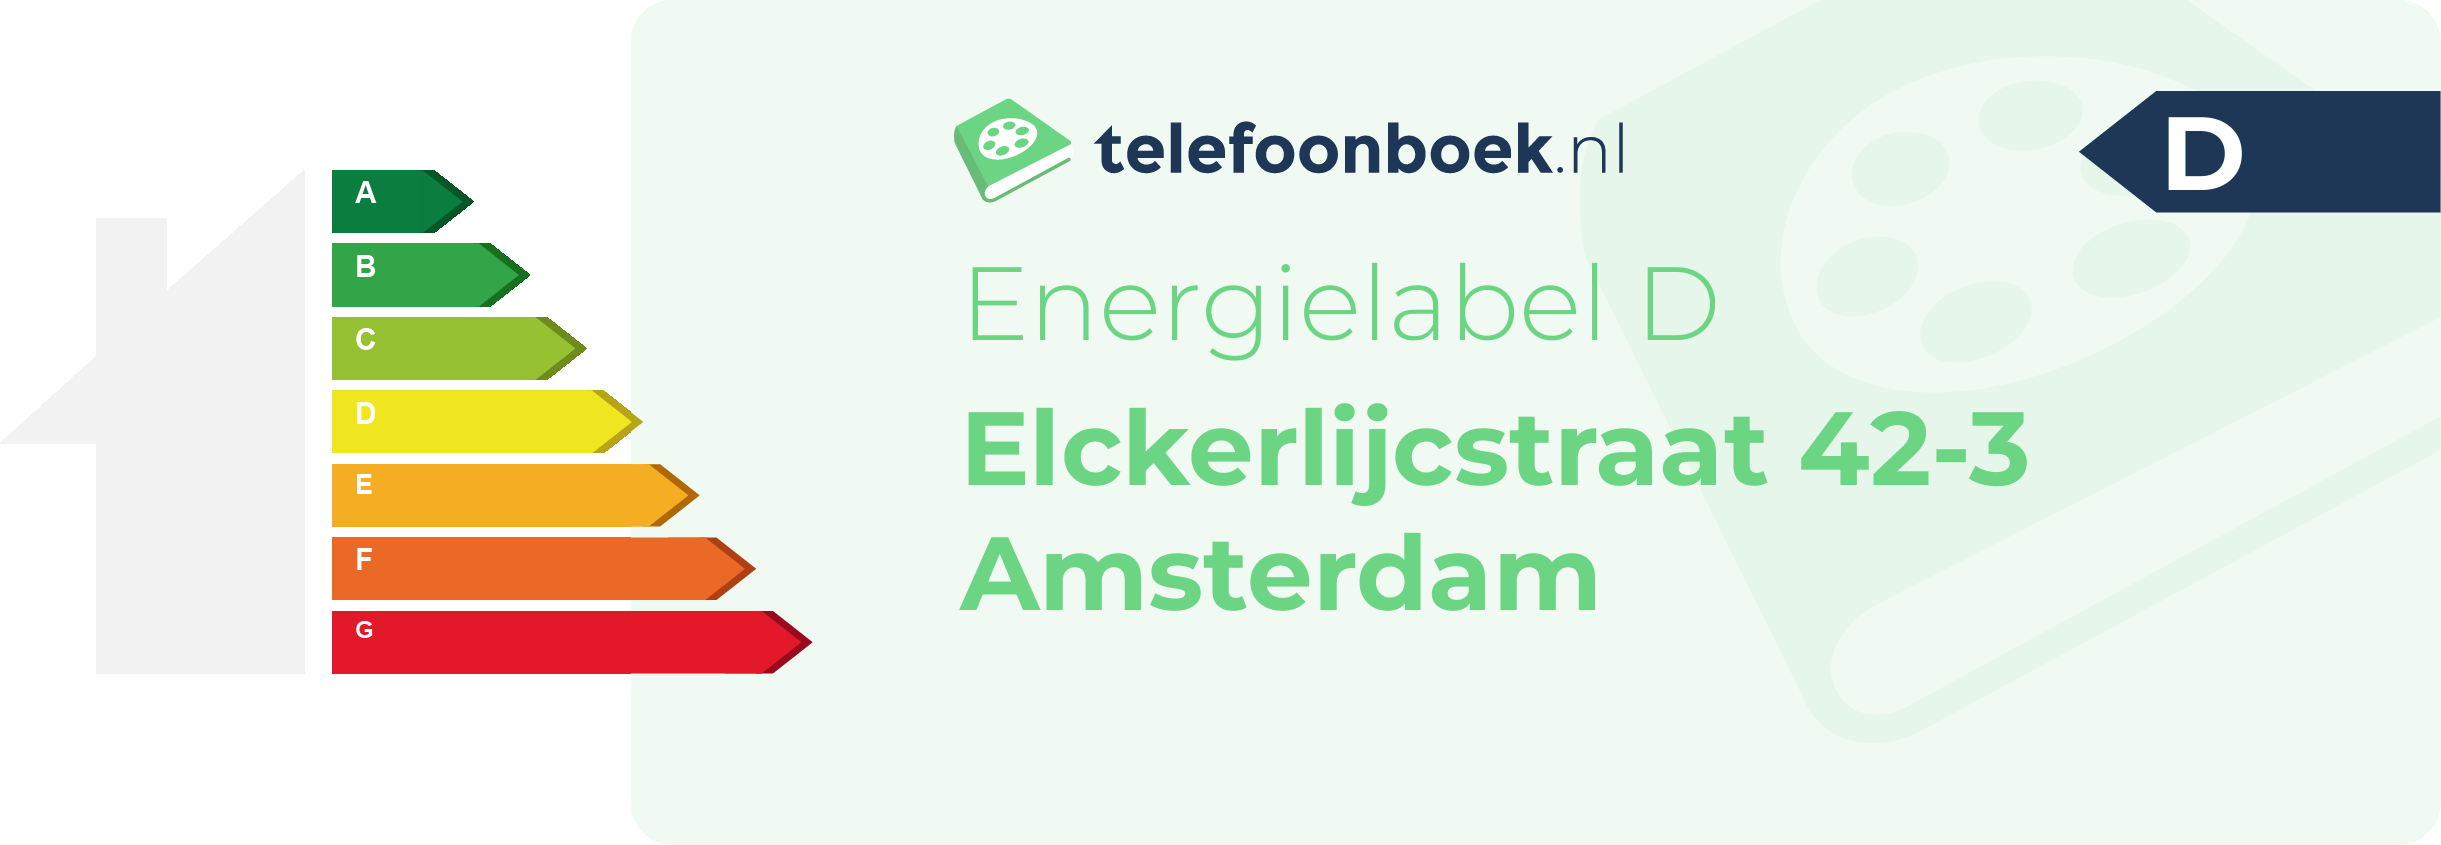 Energielabel Elckerlijcstraat 42-3 Amsterdam